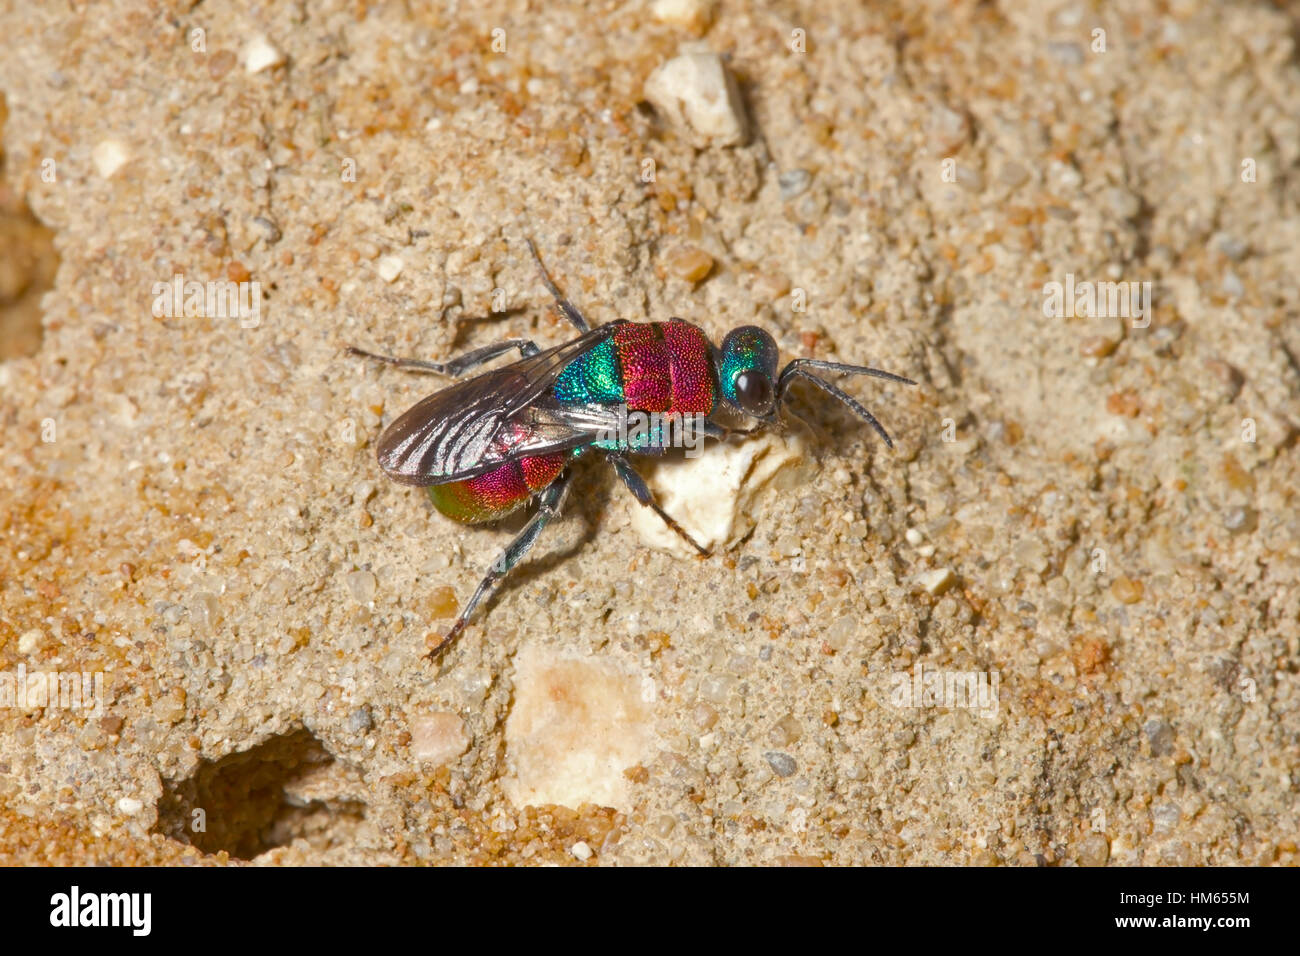 Jewel oder Ruby-tailed Wasp - Hedychrum Niemelai - Weibchen in der Nähe von Graben von Cerceris Arenaria, eines seiner Wirtsarten Stockfoto